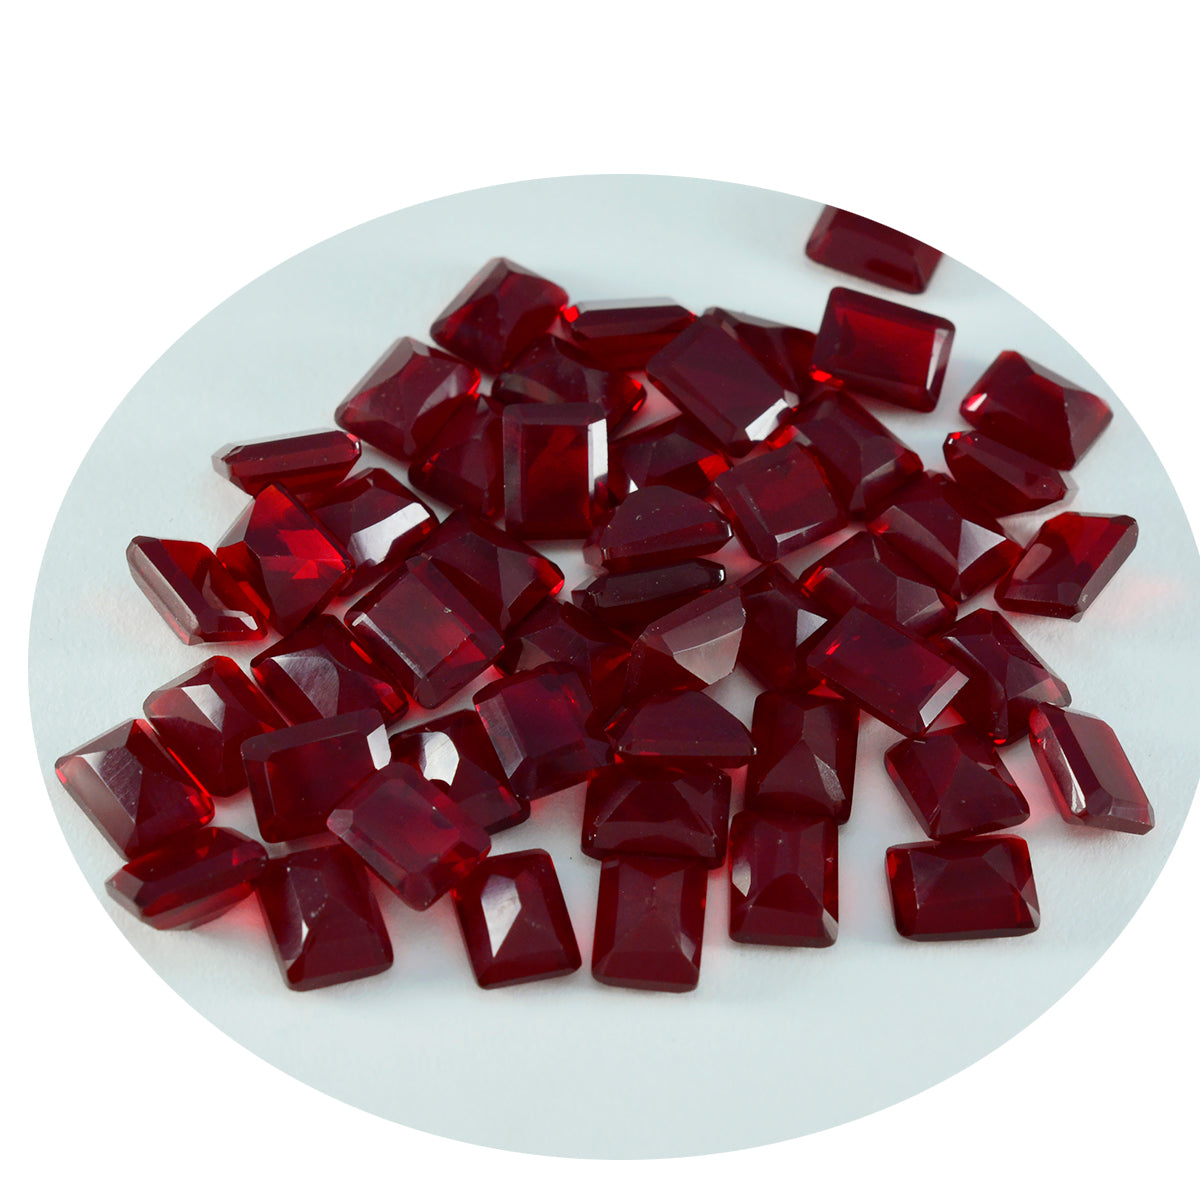 riyogems 1pz rubino rosso cz sfaccettato 6x8 mm forma ottagonale gemme di qualità dall'aspetto gradevole